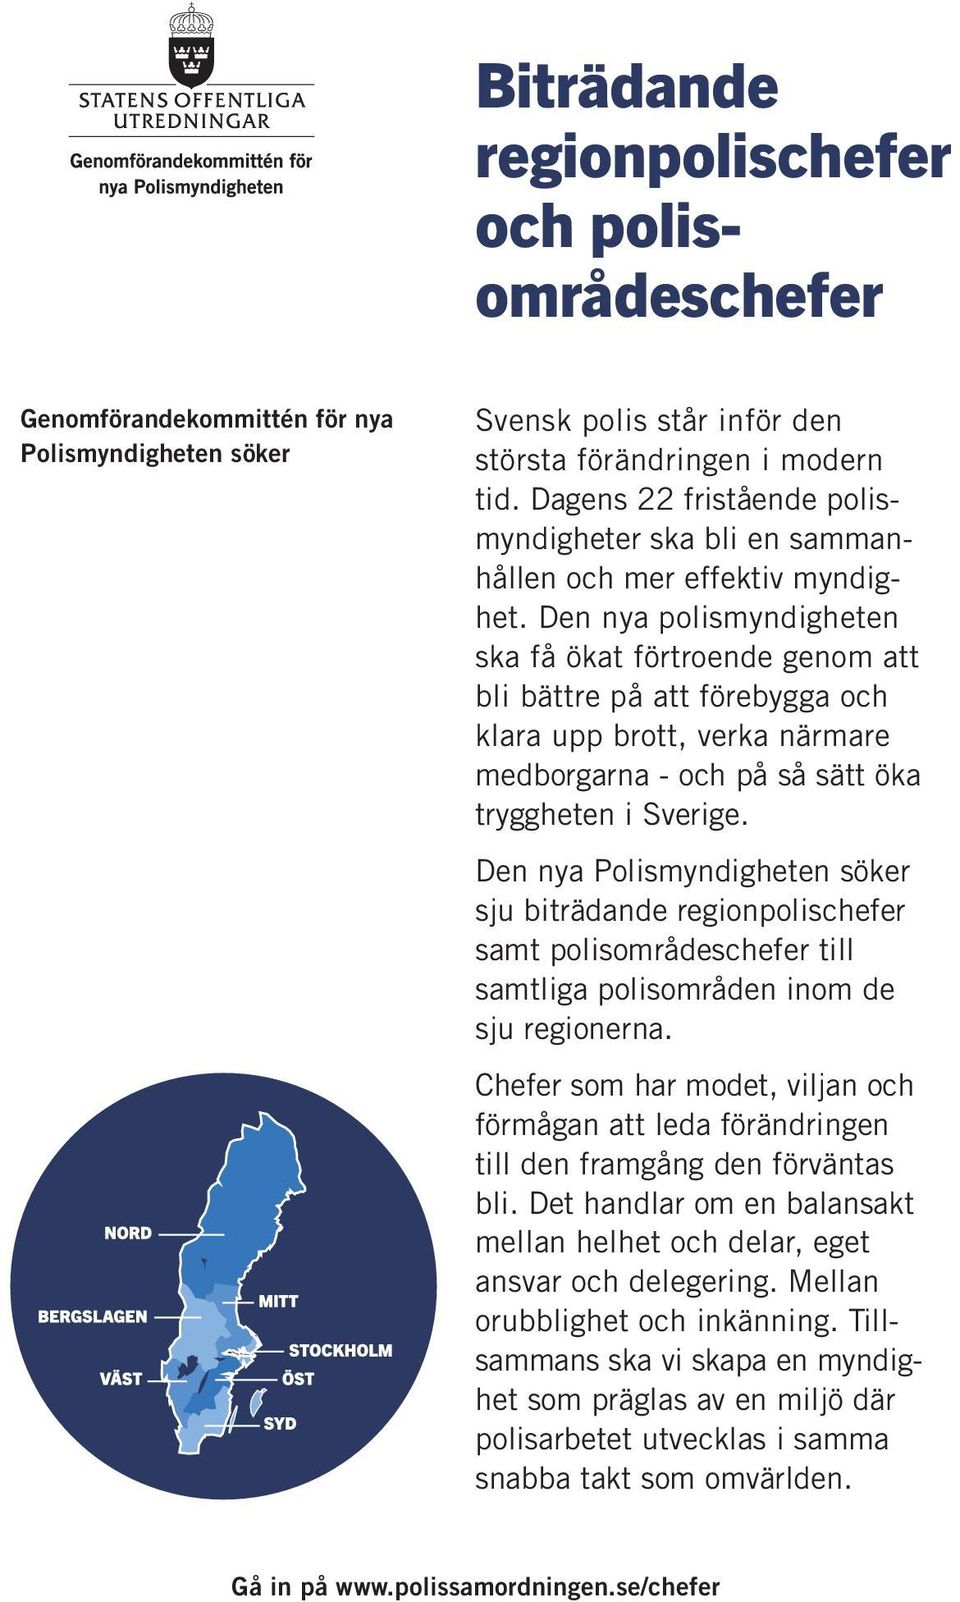 Den nya polismyndigheten ska få ökat förtroende genom att bli bättre på att förebygga och klara upp brott, verka närmare medborgarna - och på så sätt öka tryggheten i Sverige.